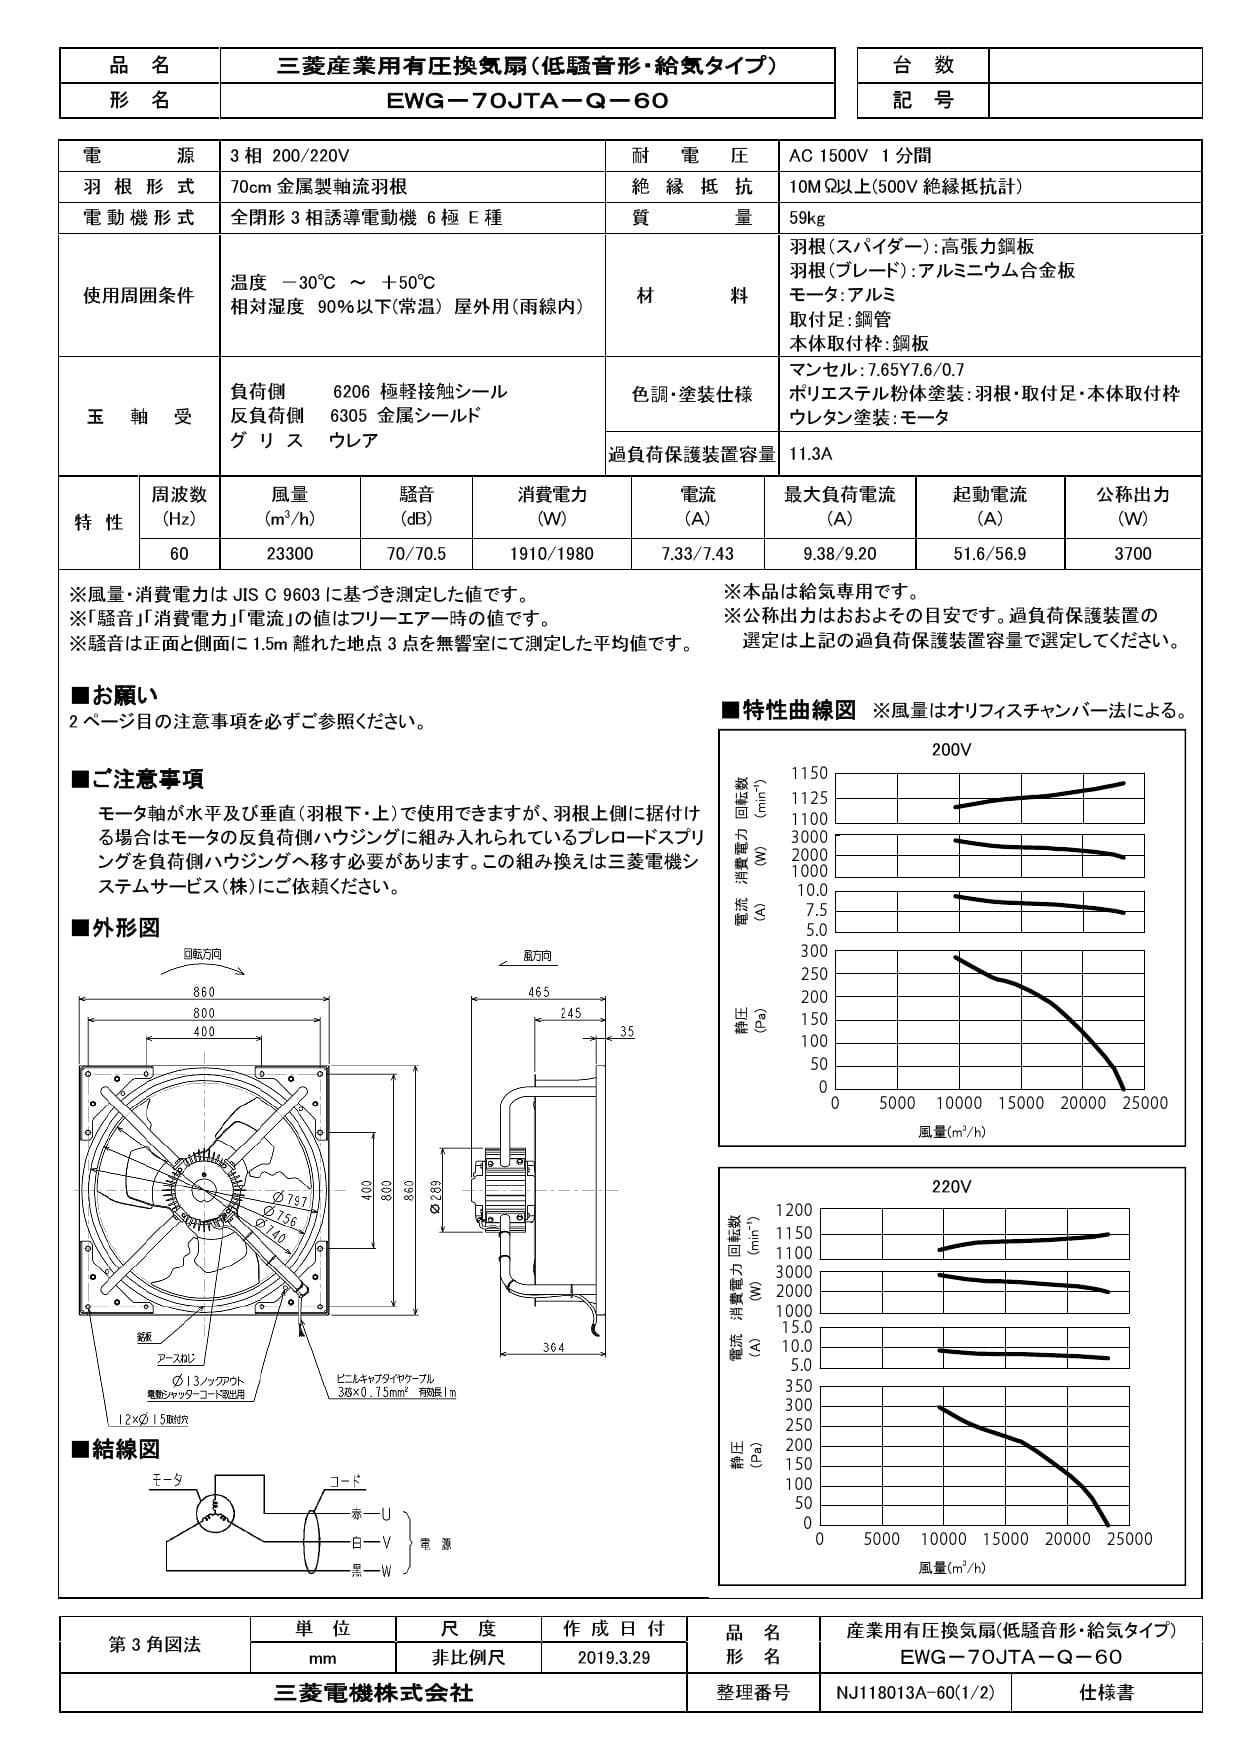 舗 ぎおんEWG-70JTA-Q-50 三菱電機 産業用 送風機 本体 有圧 換気扇 三相200V 50Hz